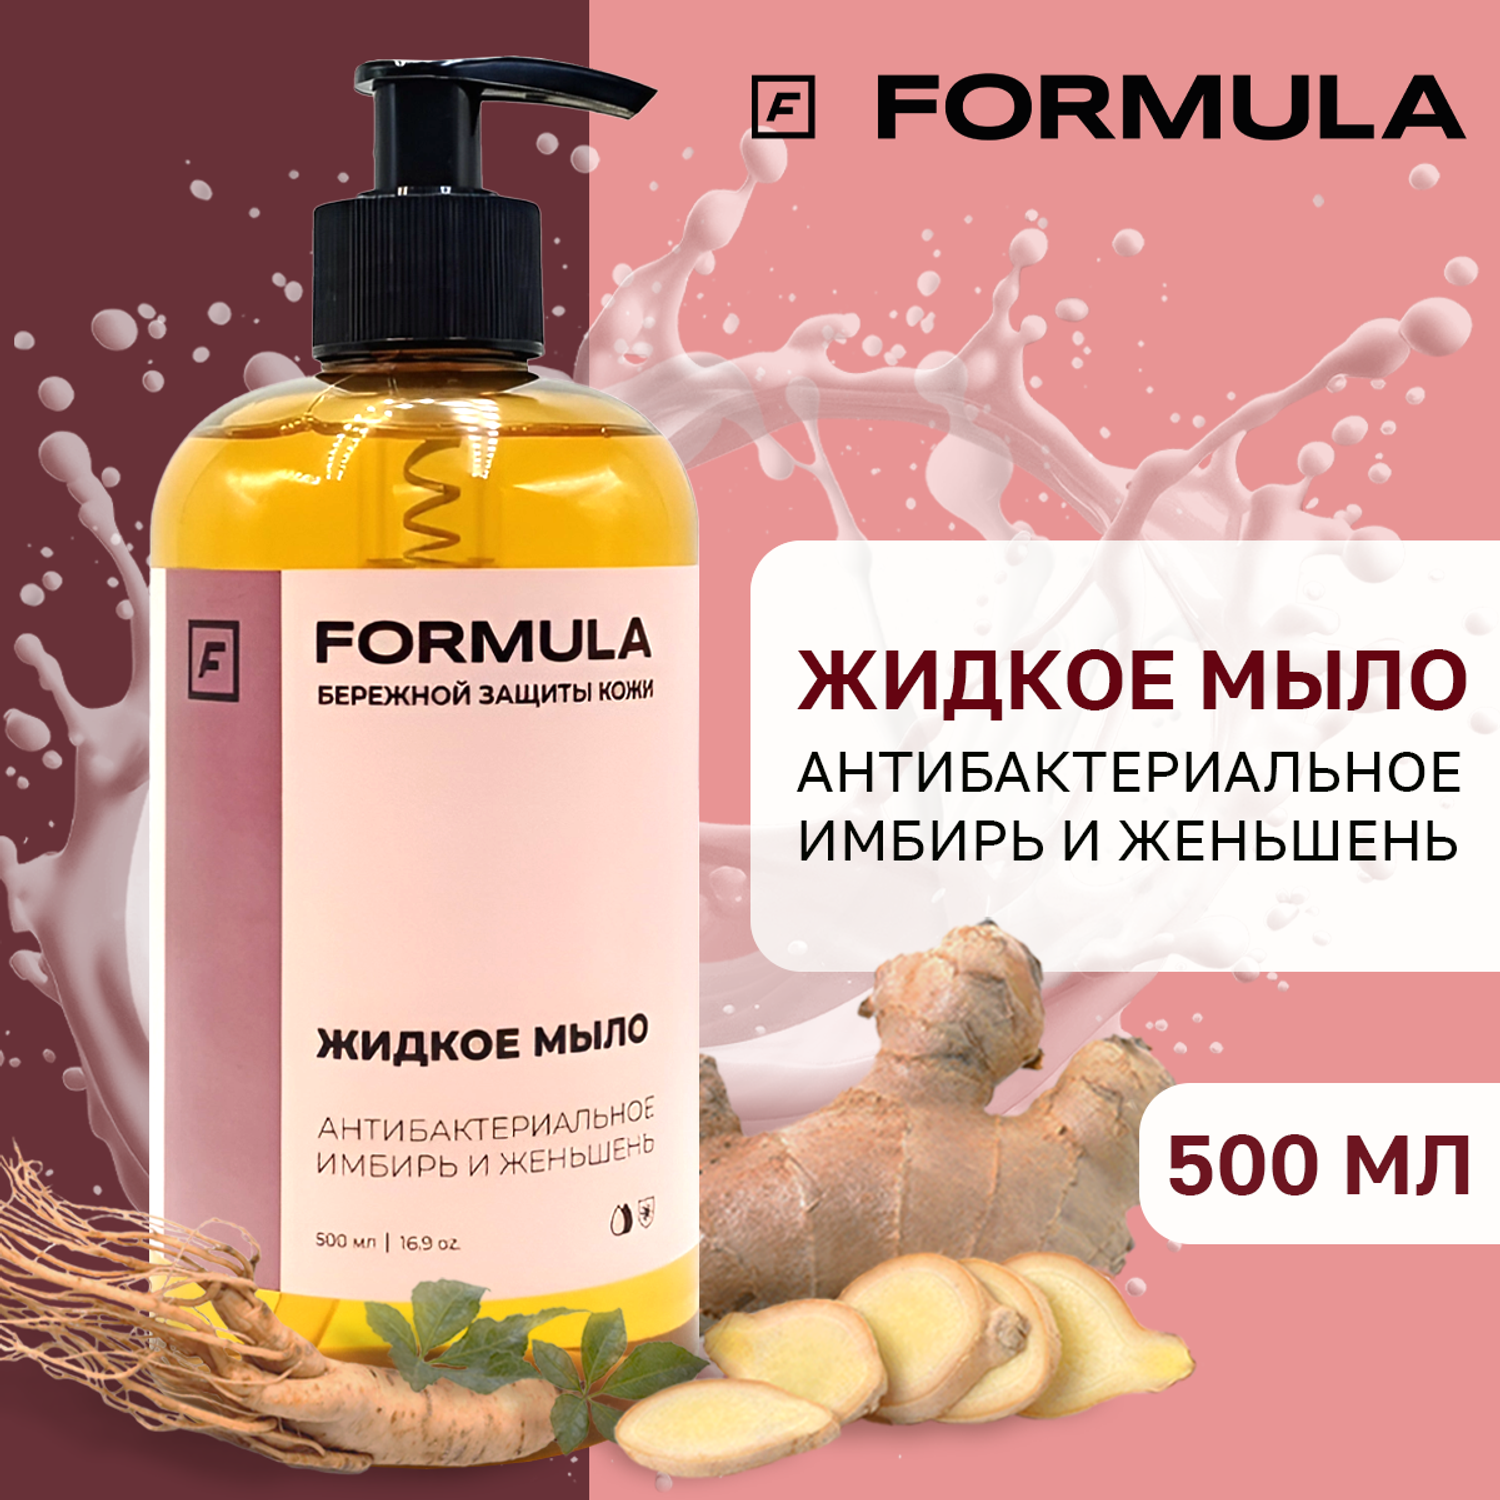 Жидкое мыло F Formula антибактериальное Имбирь и женьшень 500 мл - фото 1